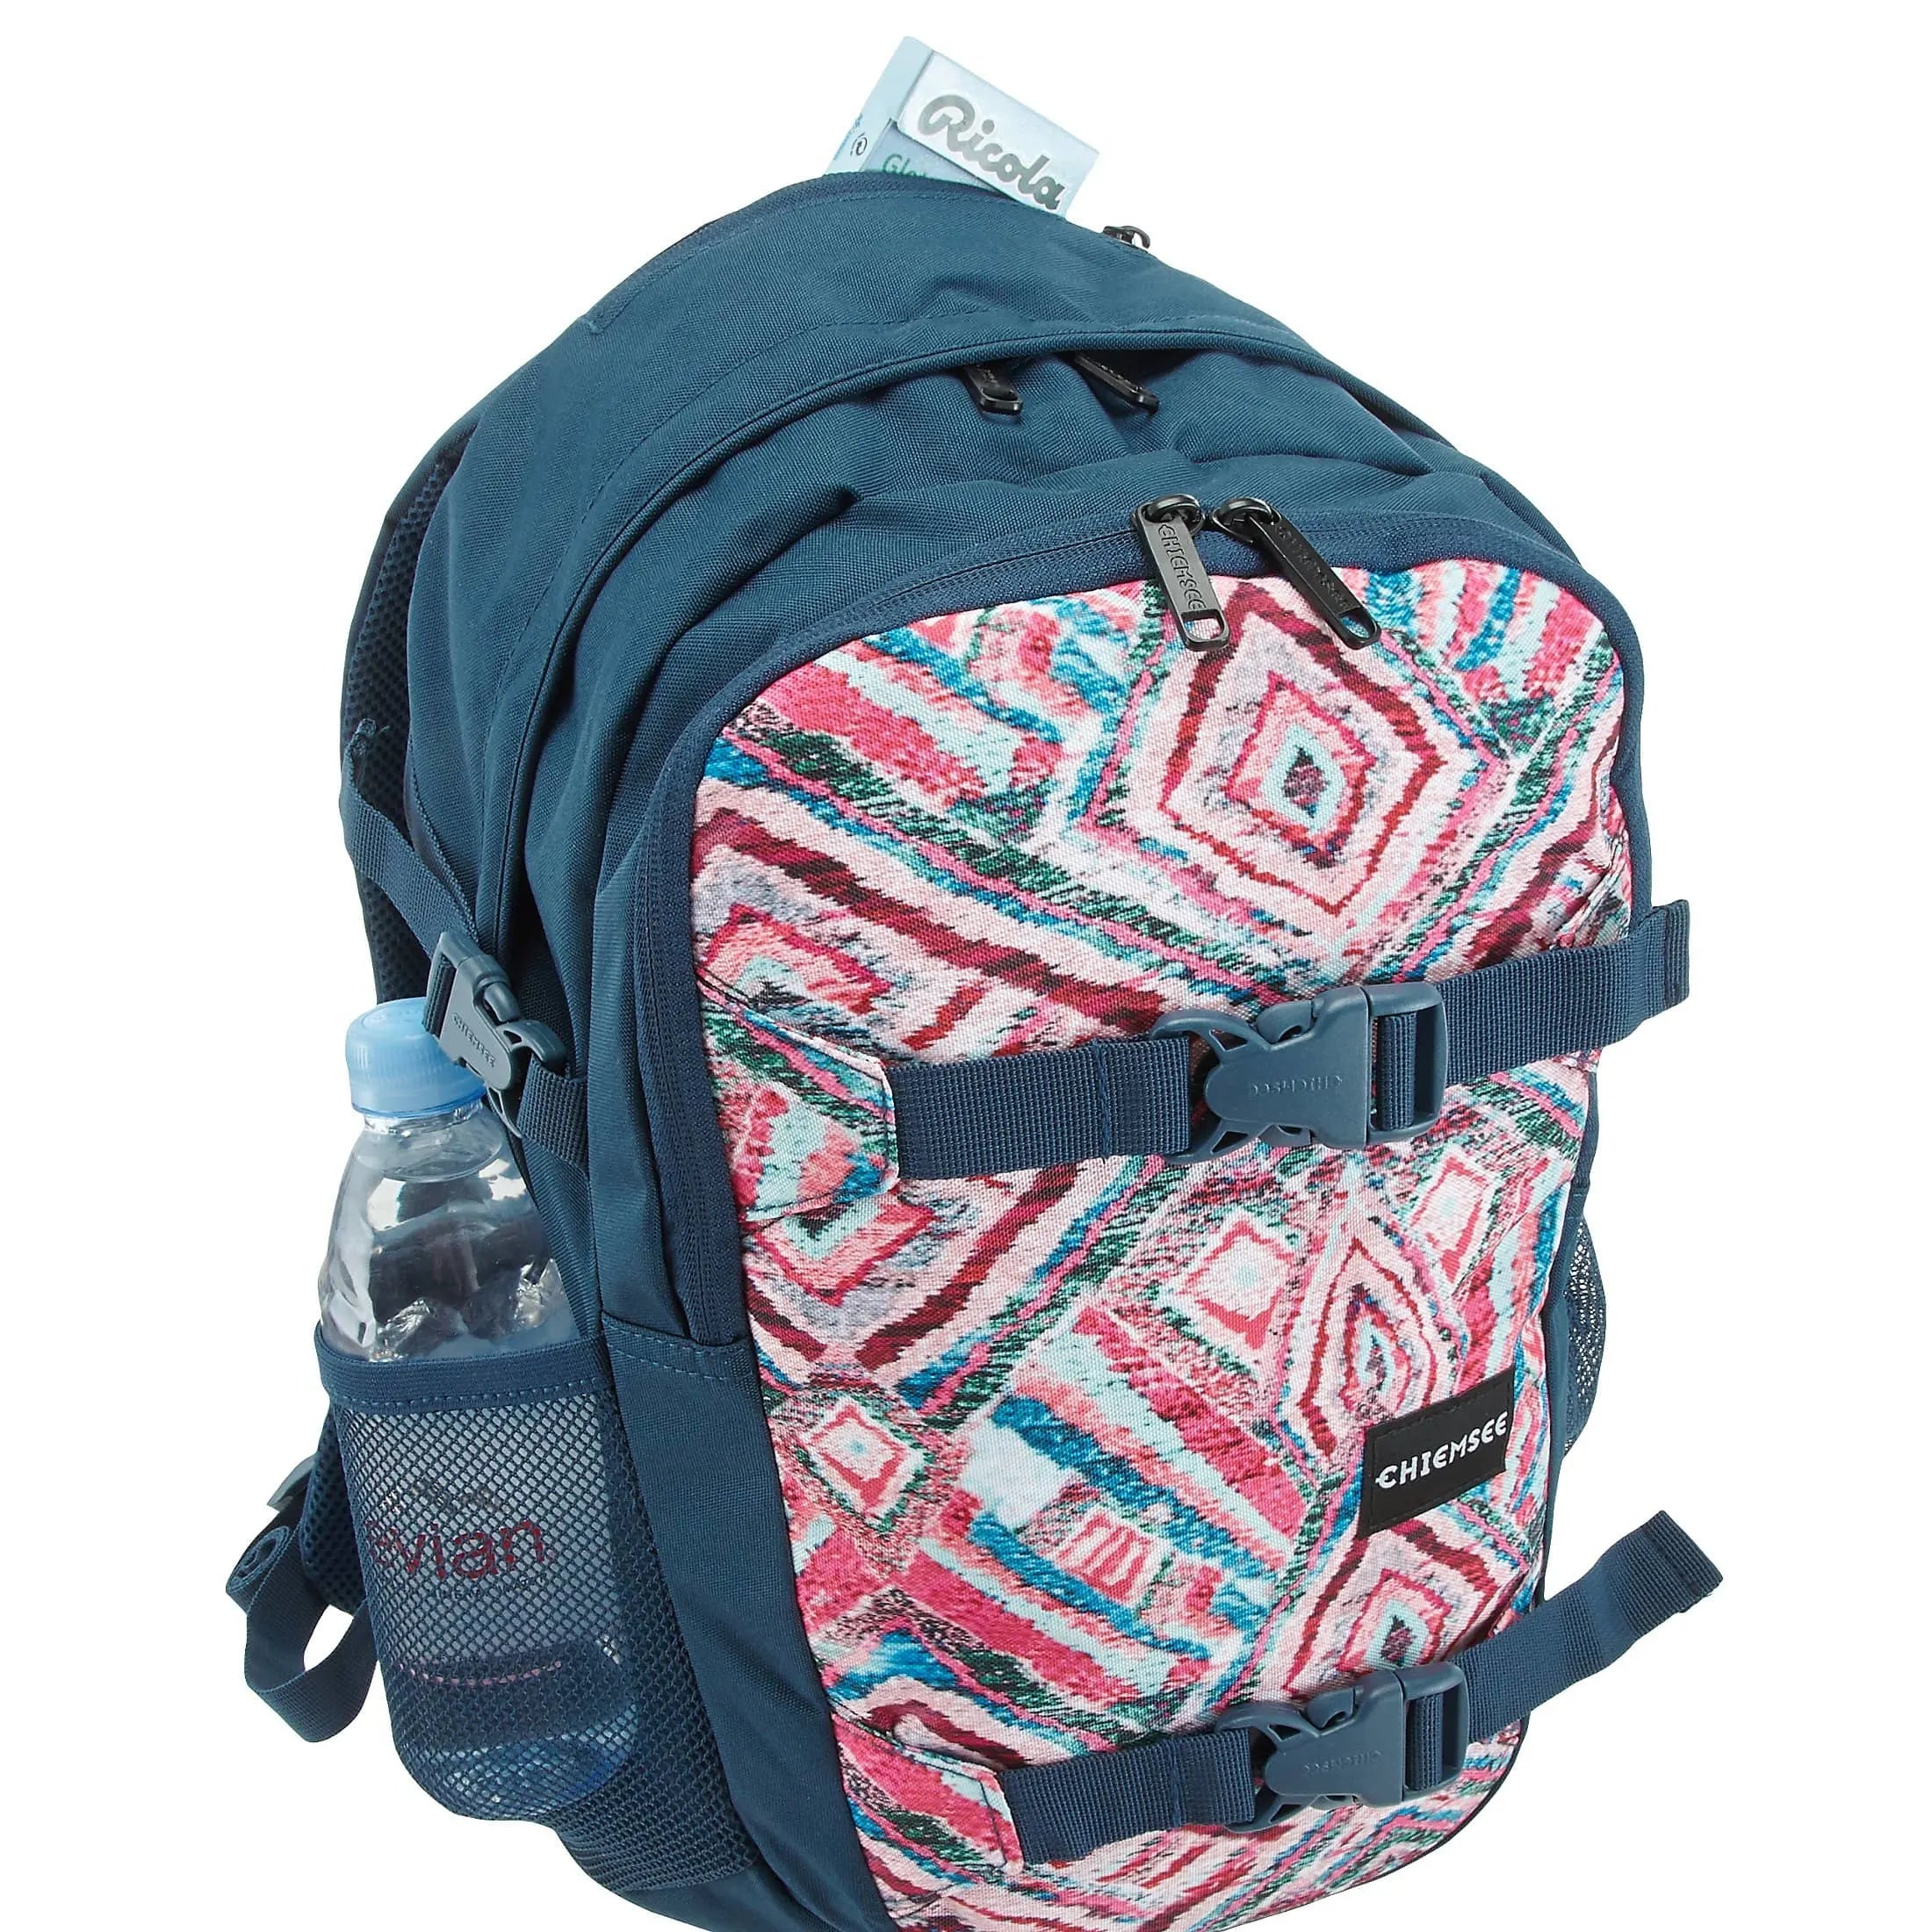 Chiemsee Sports & Travel Bags School Backpack 48 cm - ocean